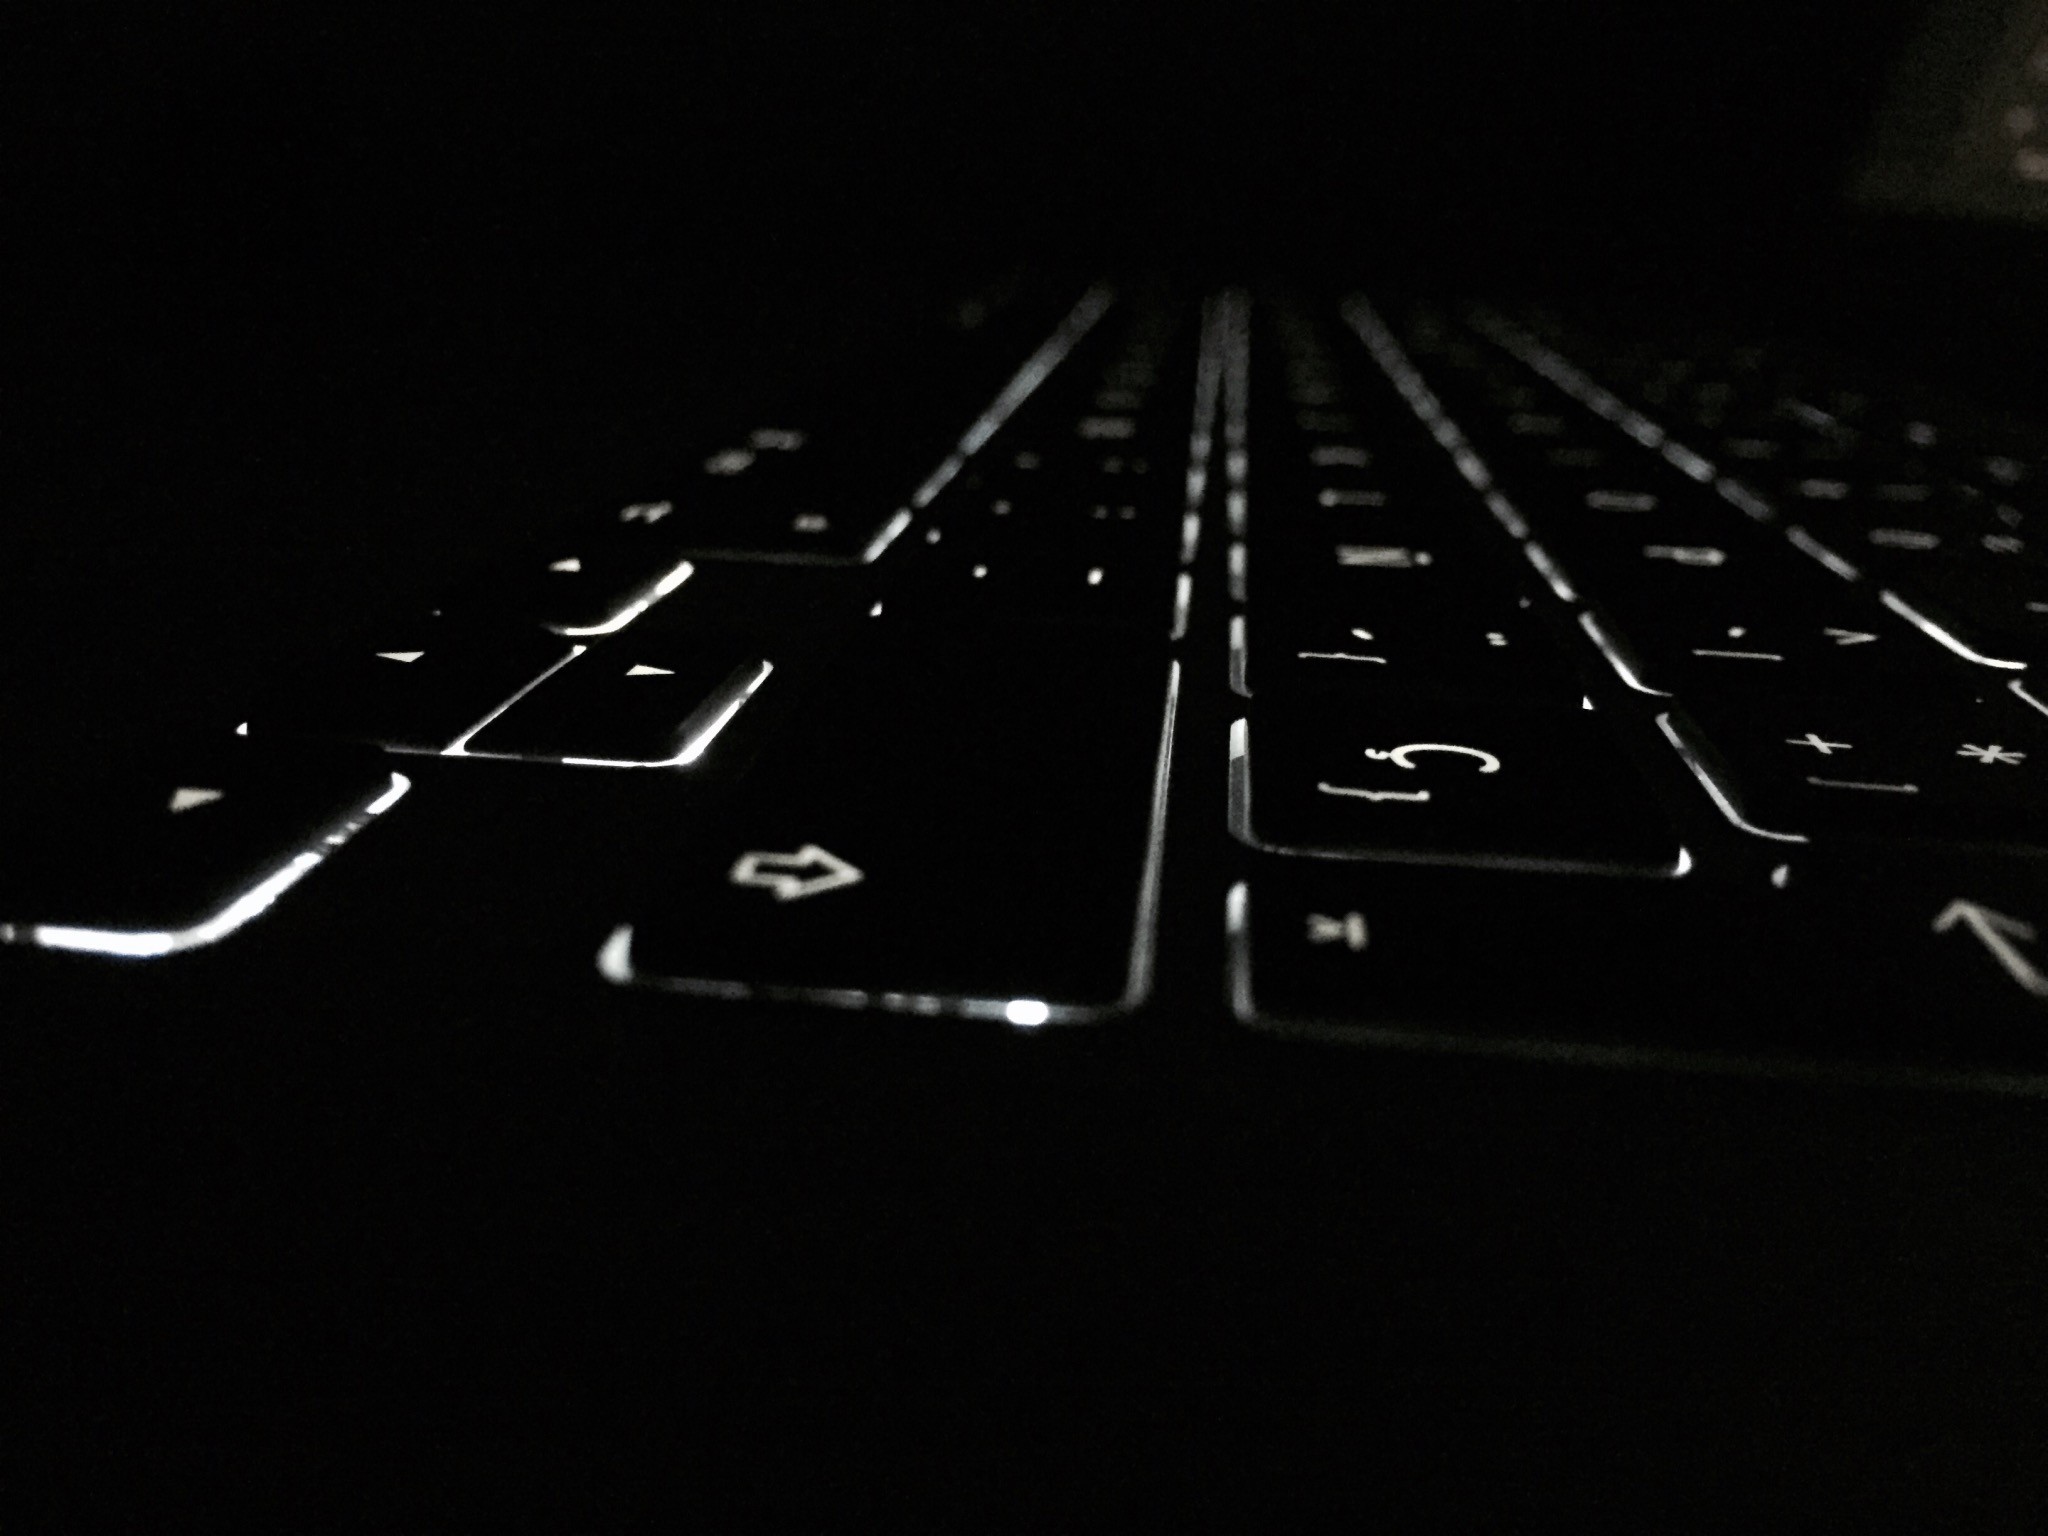 General 2048x1536 dark keyboards macro lights